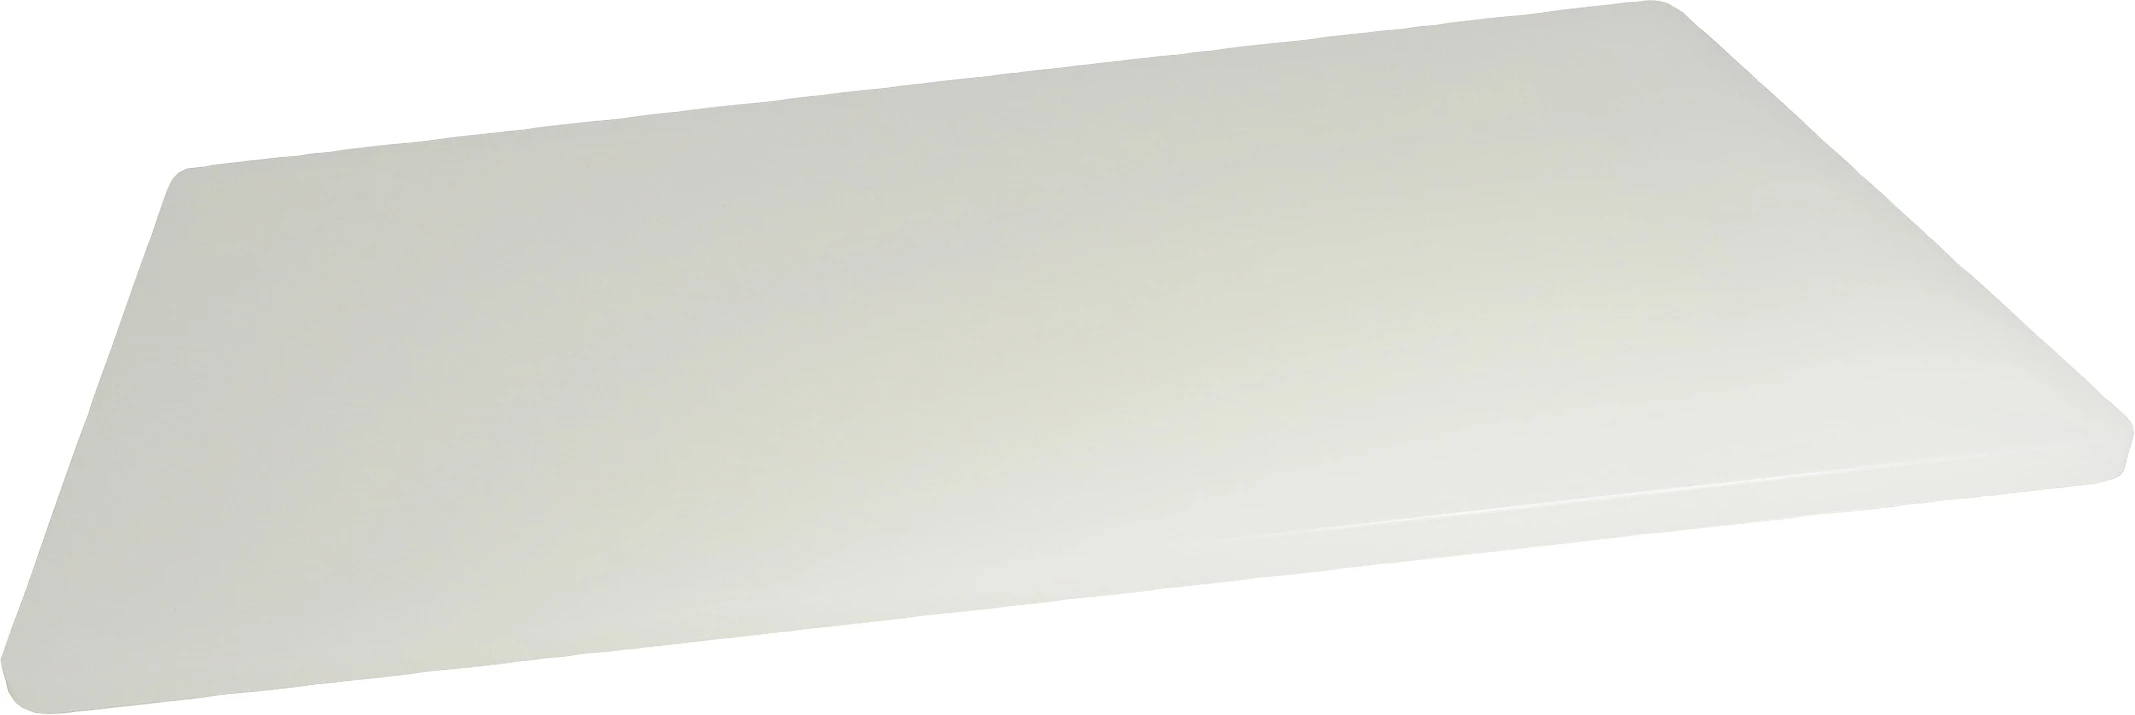 Daloplast skæreplanke, hvid,53 x 30 x 1,4 cm